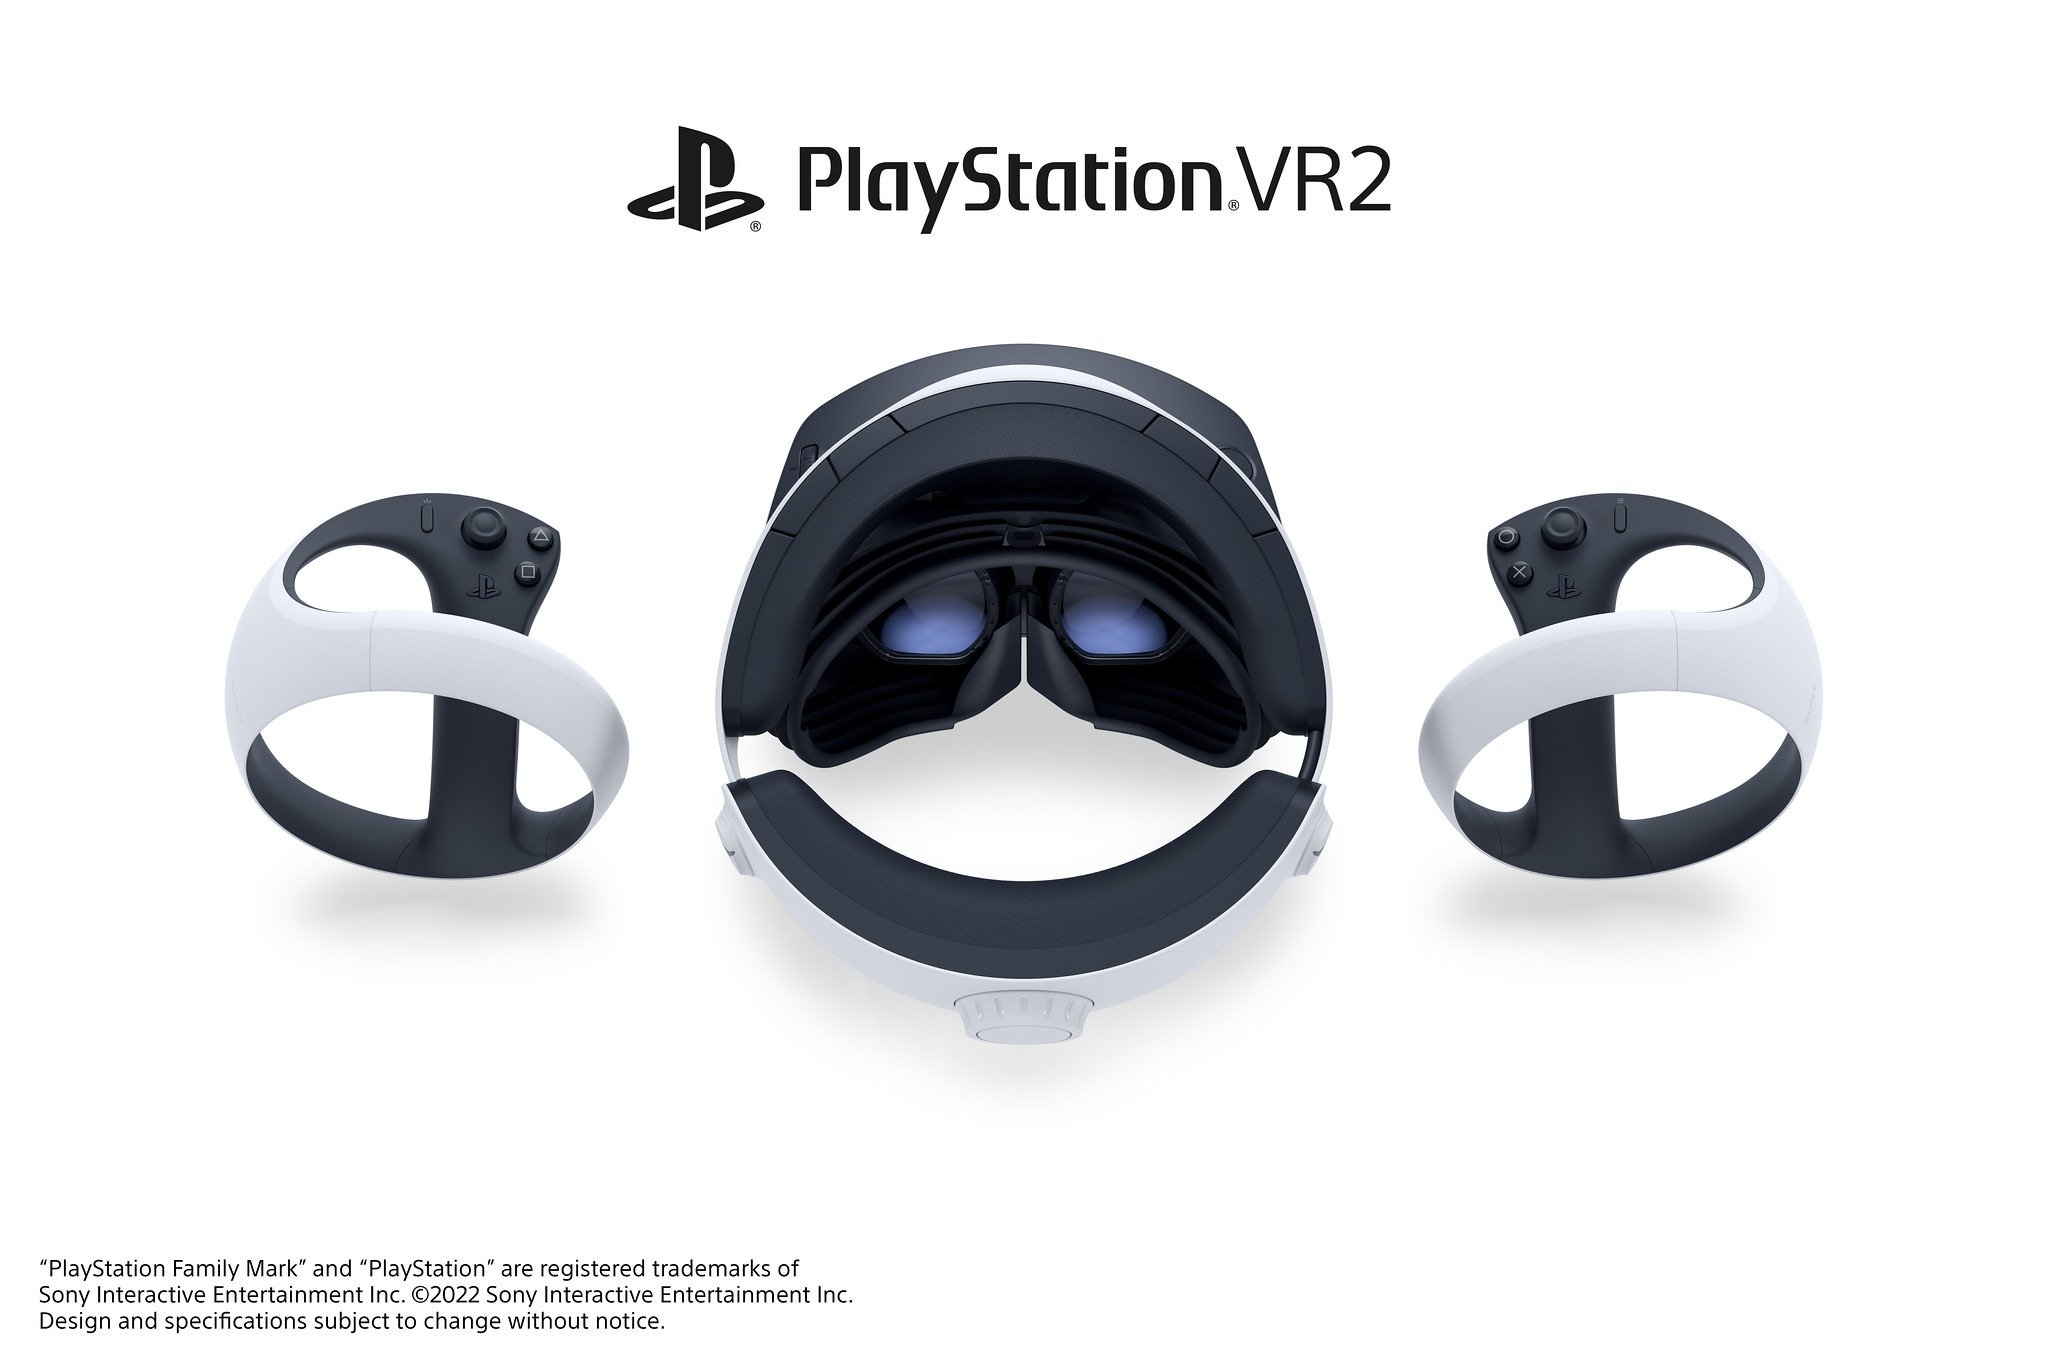 Visuel du PlayStation VR 2.